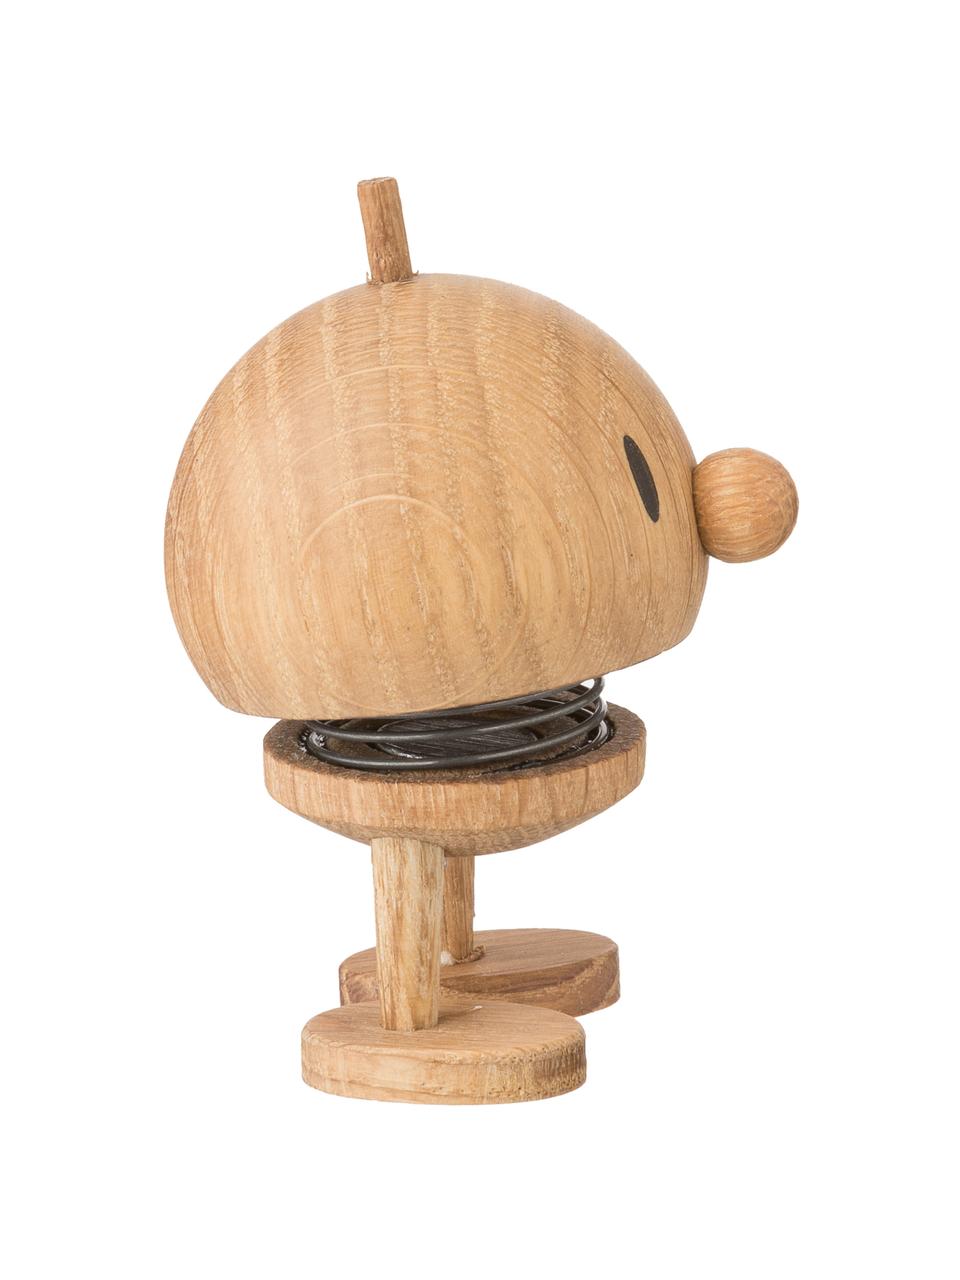 Deko-Objekt Baby Woody Bumble, Korpus: Eichenholz, Braun, Ø 5 x H 7 cm